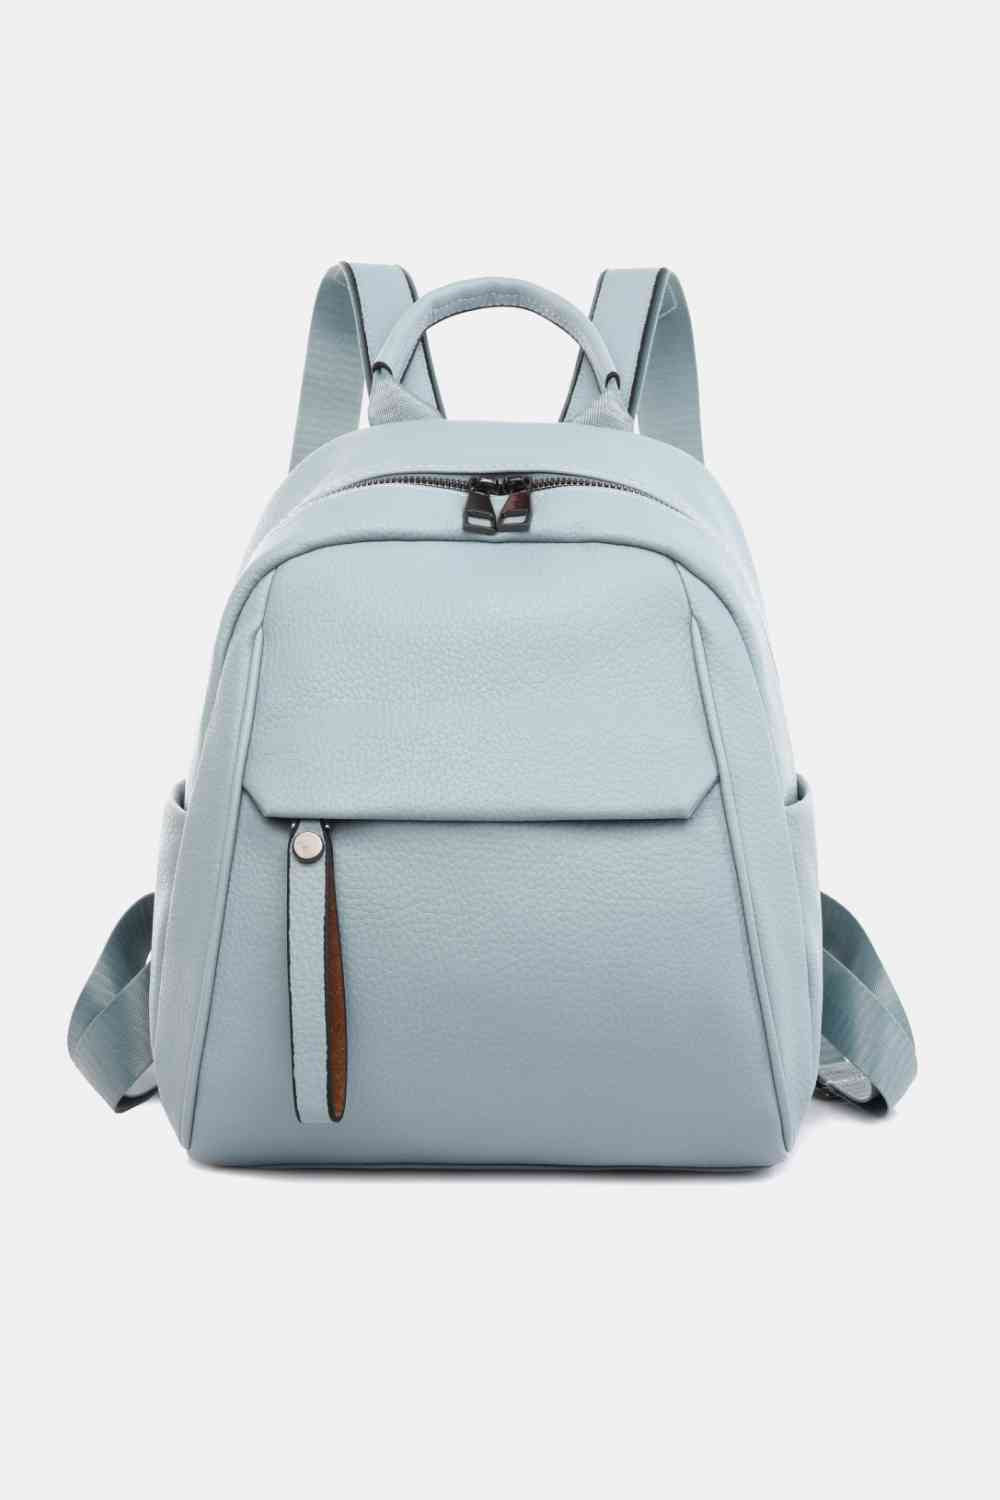 TEEK - Best Basic Backpack BAG TEEK Trend Pastel  Blue  